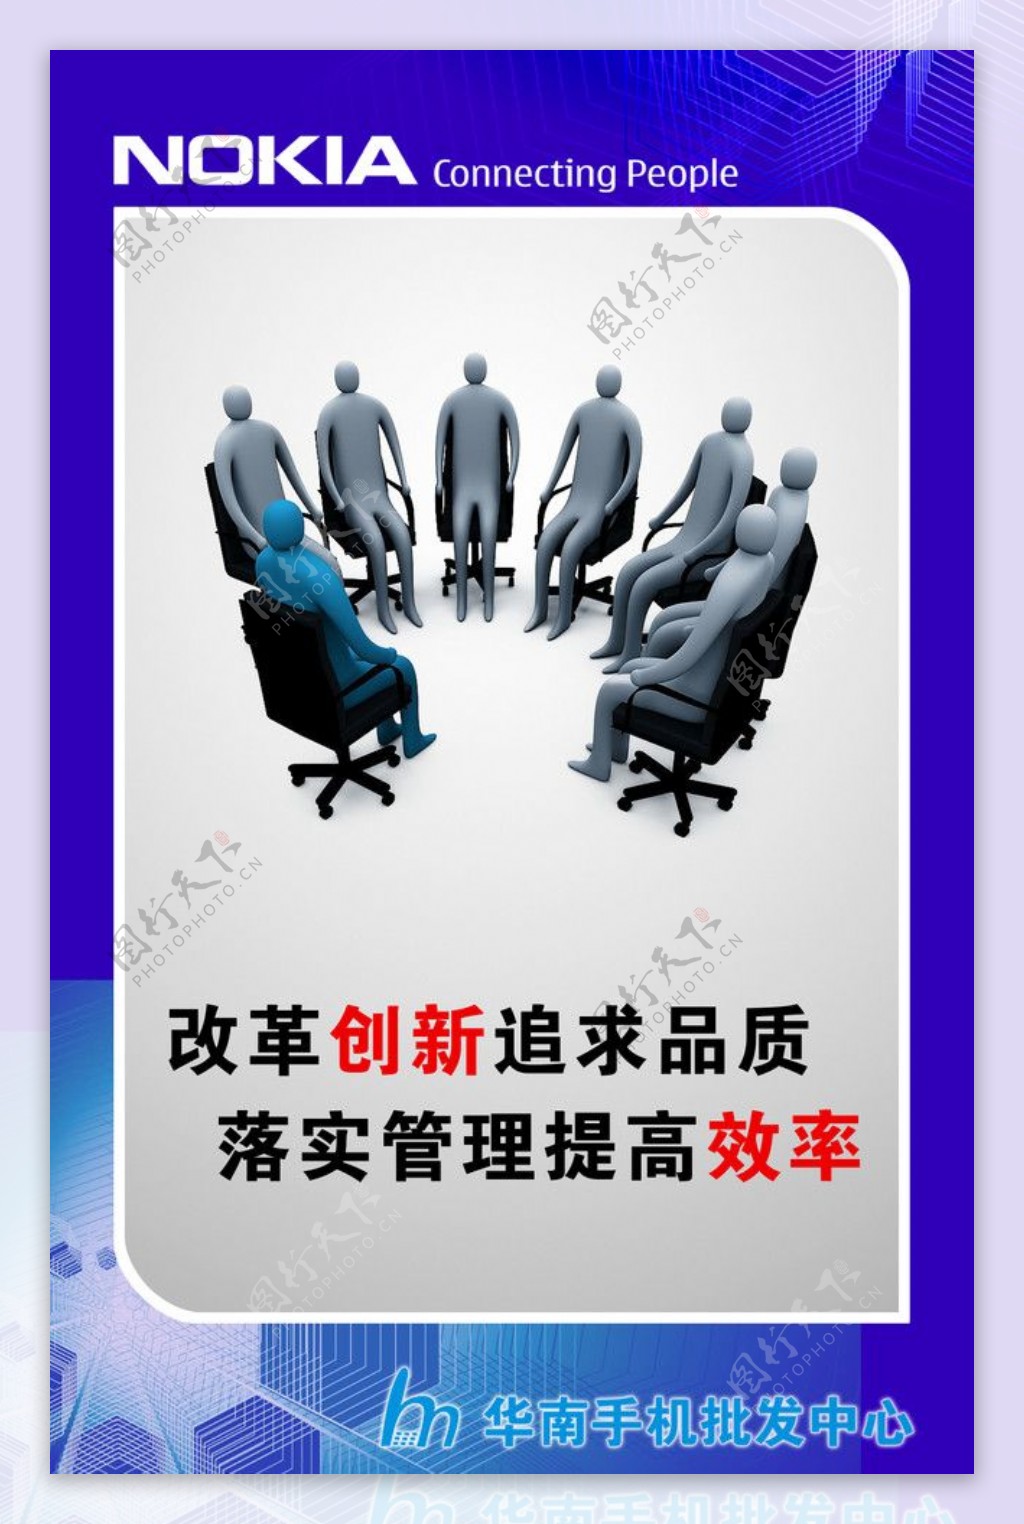 华南手机批发中心广告标语1图片